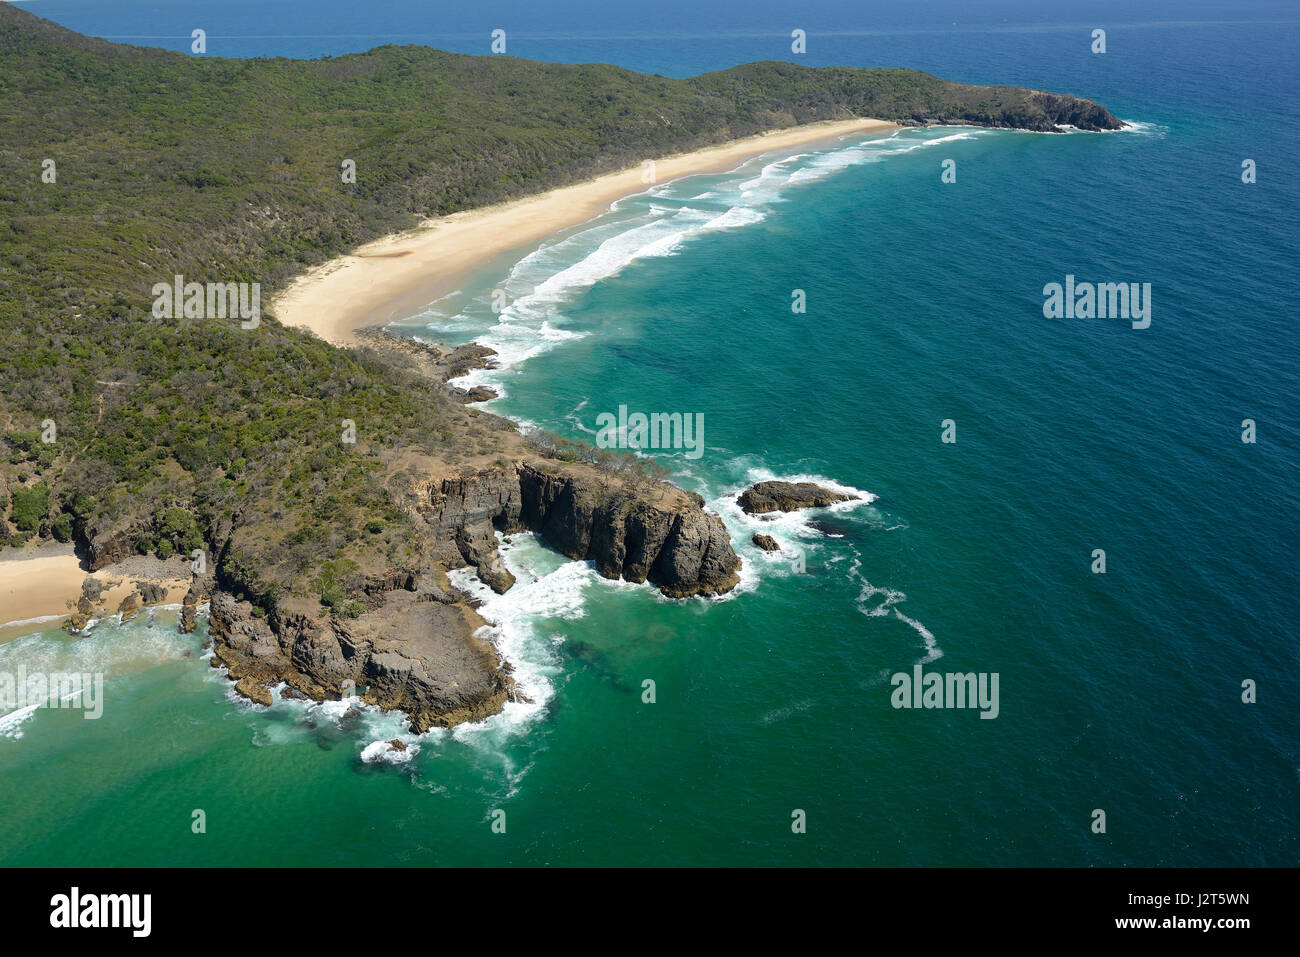 DEVIL'S KITCHEN (L'éperon rocheux en forme de U) et Alexandria Bay (vue aérienne). Le Parc National de Noosa Heads, Sunshine Coast, Queensland, Australie. Banque D'Images